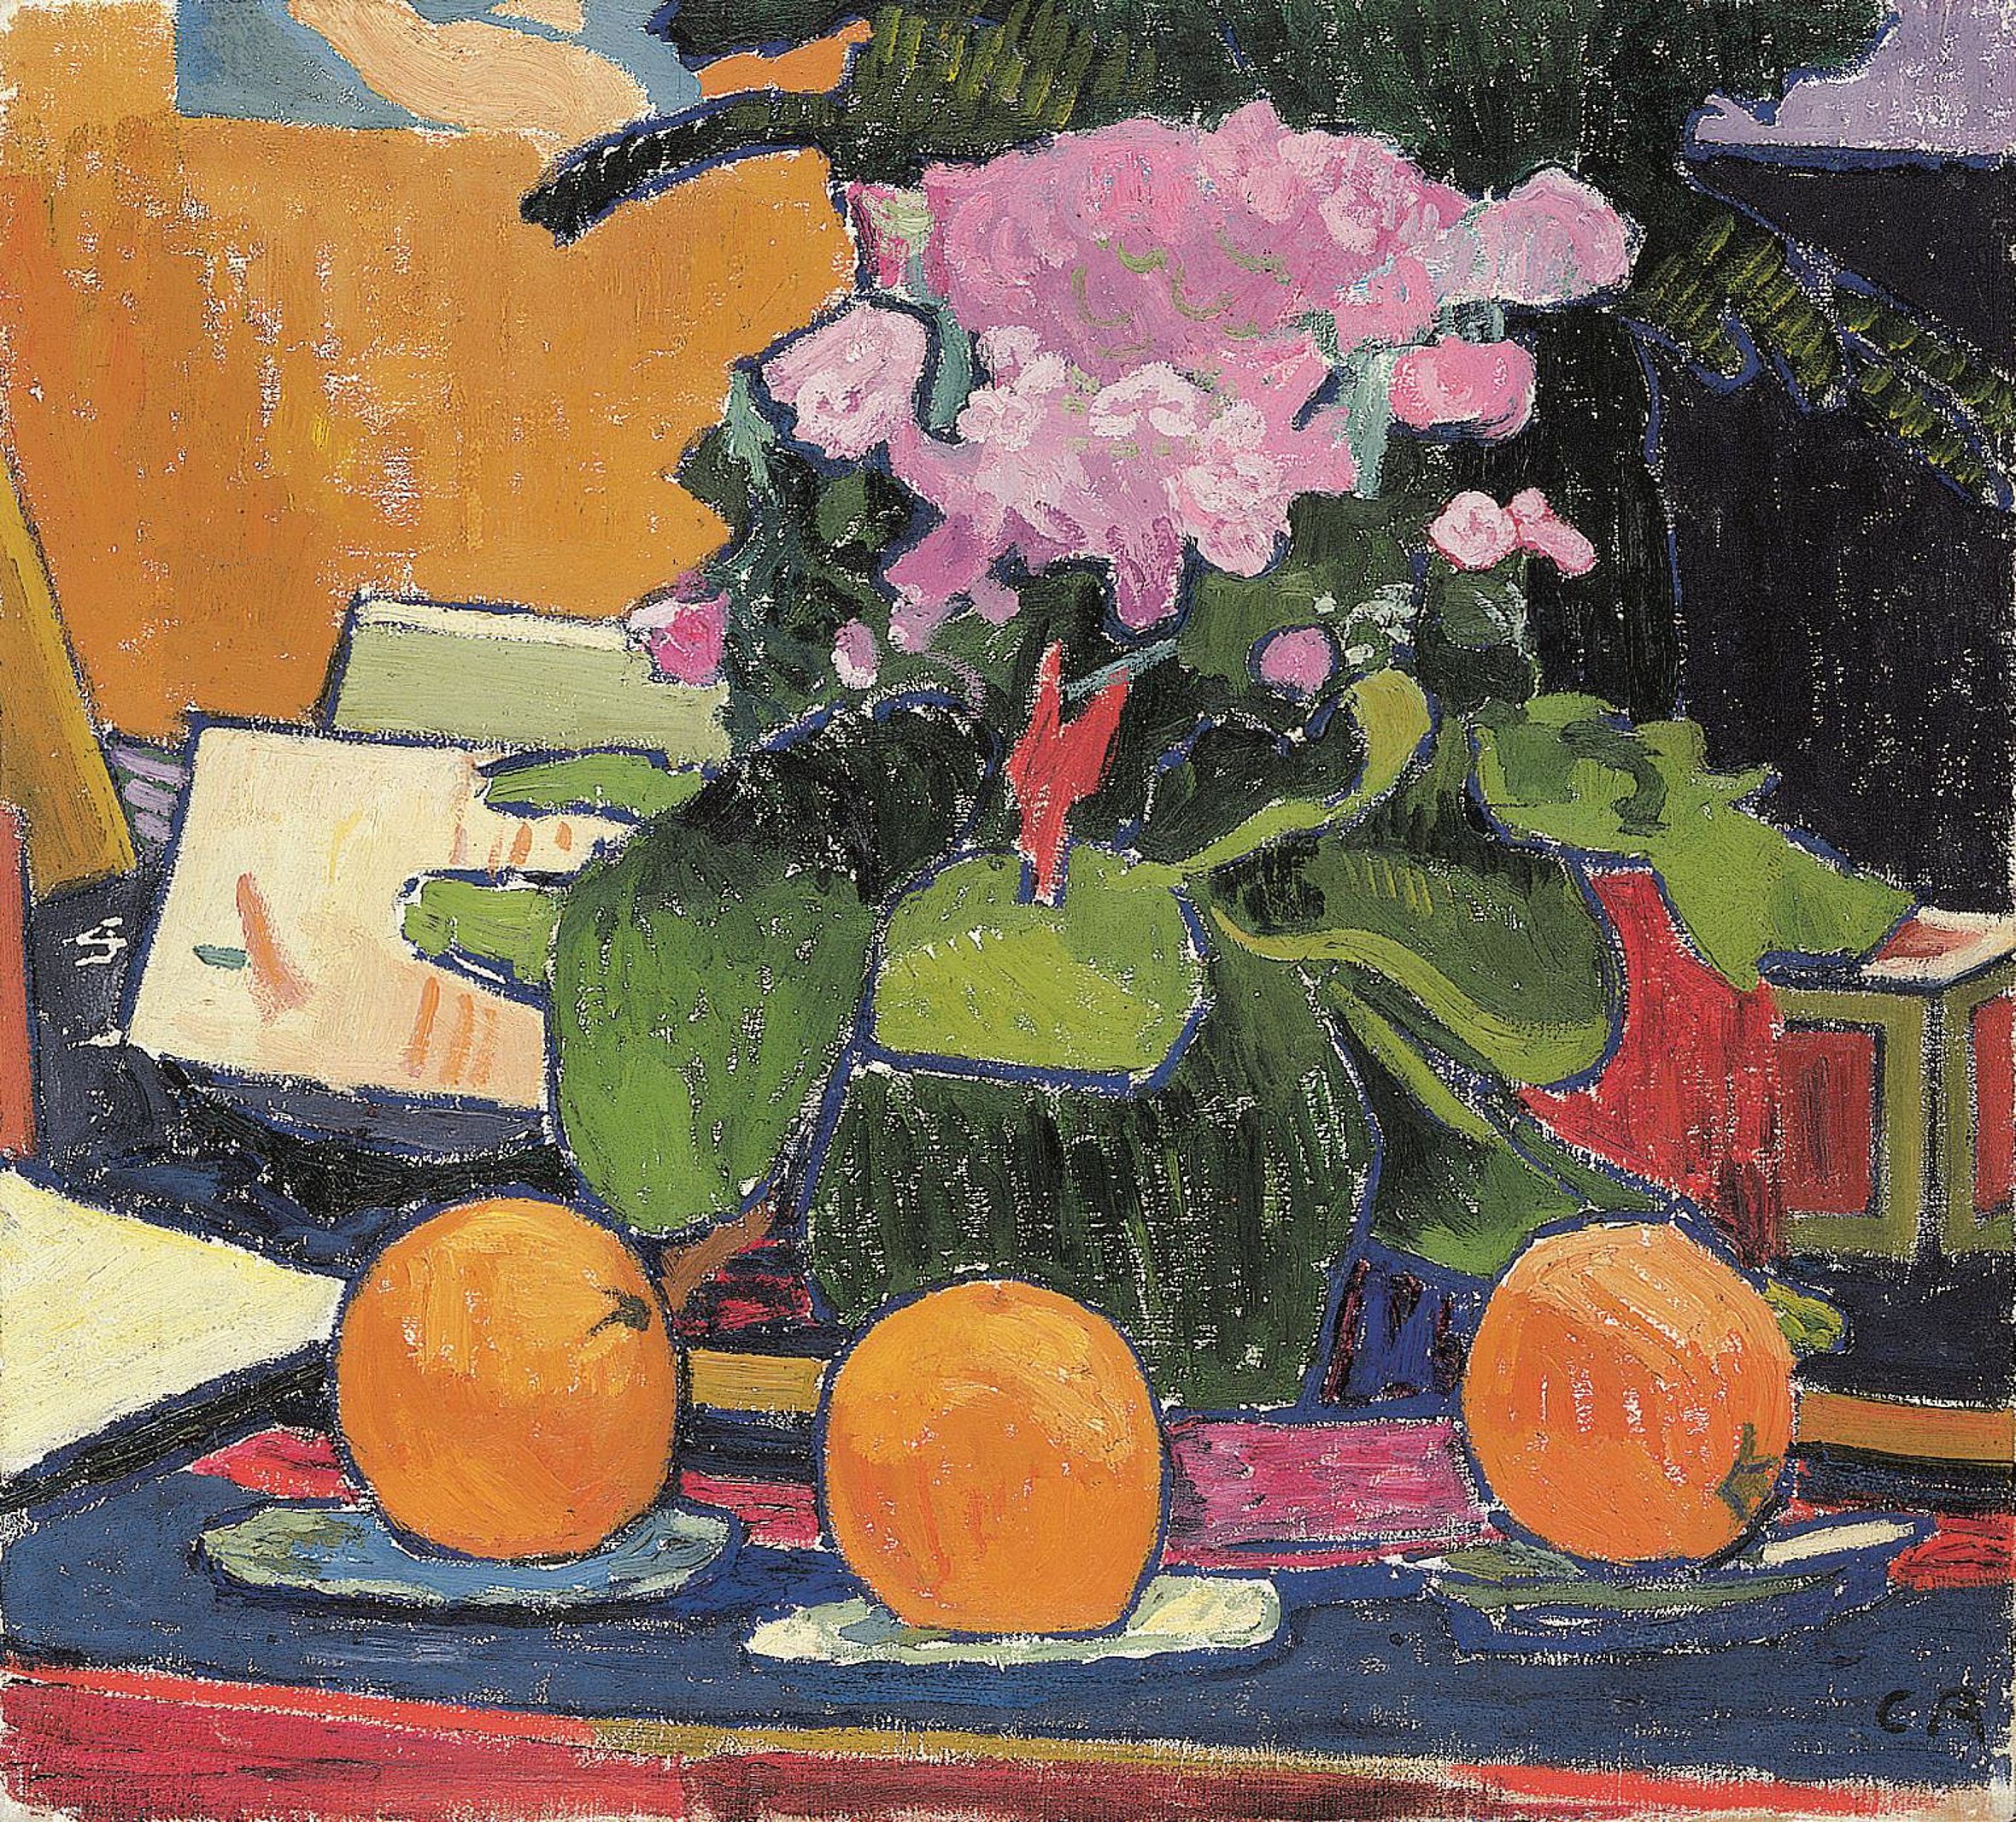 Cuno Amiet, Stillleben mit drei Orangen, 1907/08
Huile sur toile, 54 x 60 cm
Aargauer Kunsthaus, Aarau / Donation de Dr. Annie Zaugg, Baden